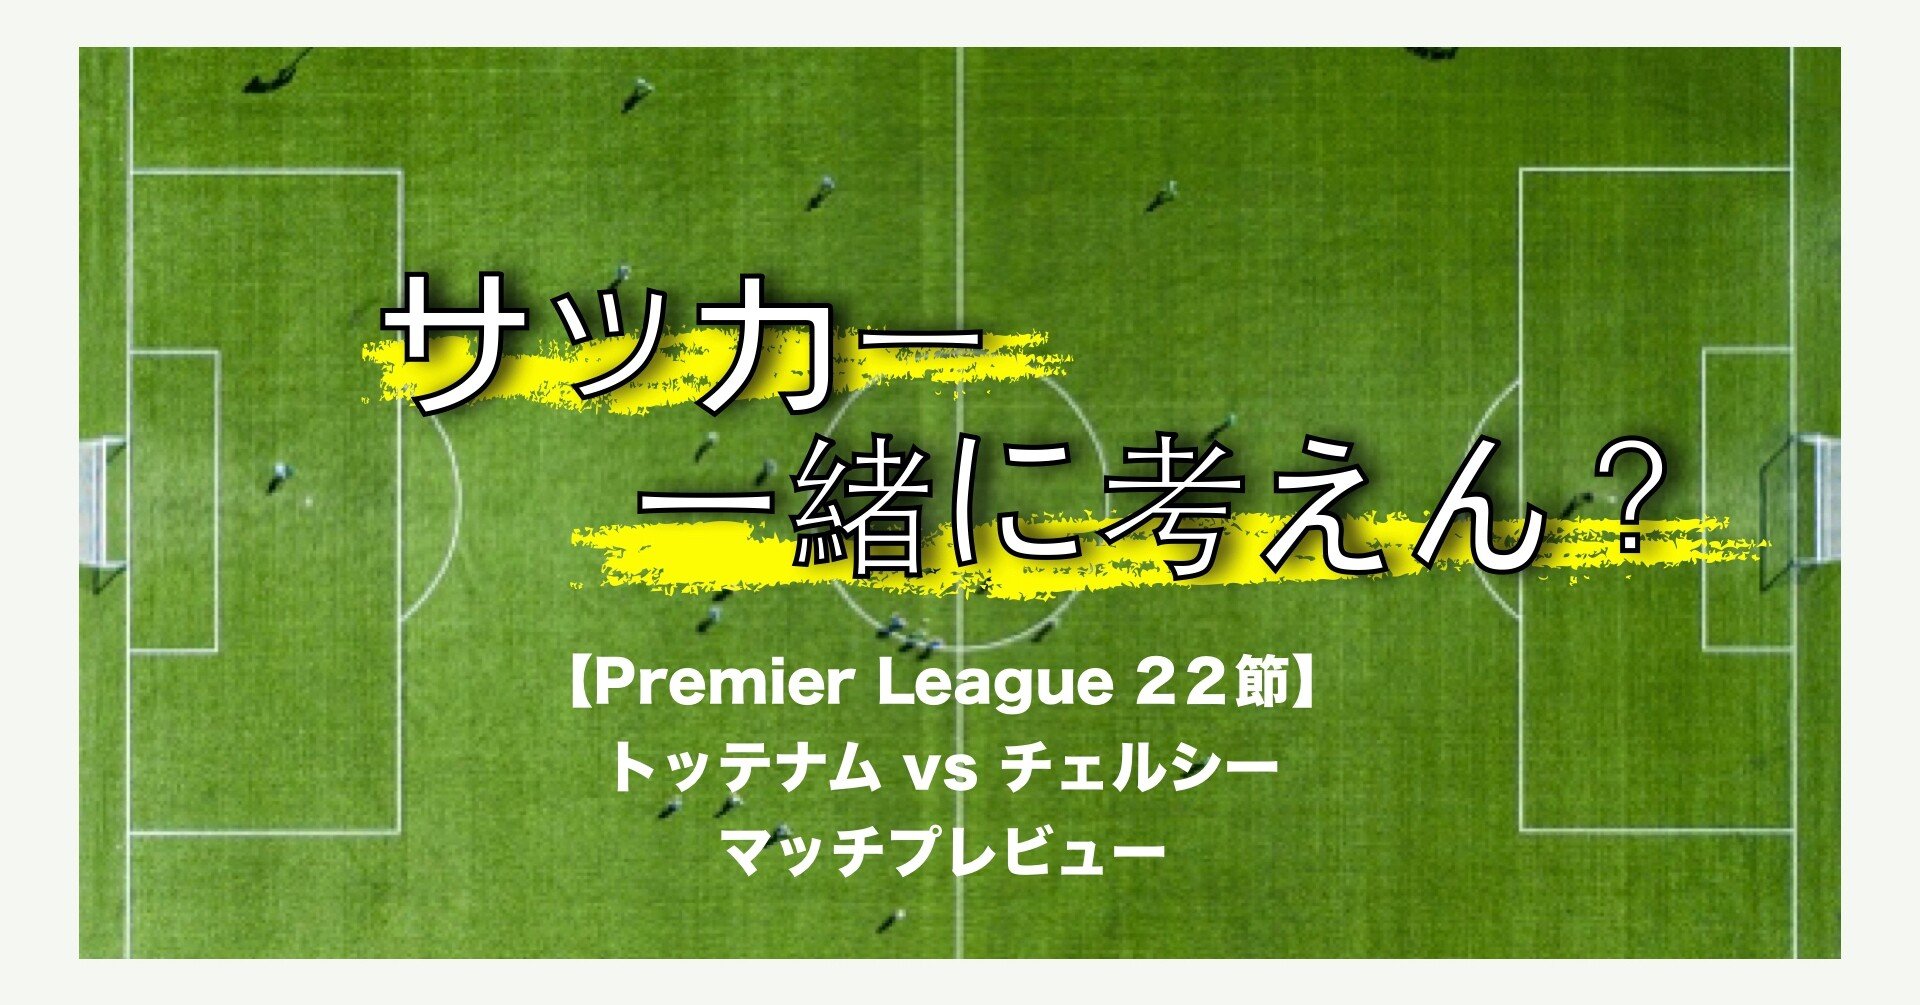 プレビュー Premier League 22節 トッテナム チェルシー Nobuya Akazawa Note